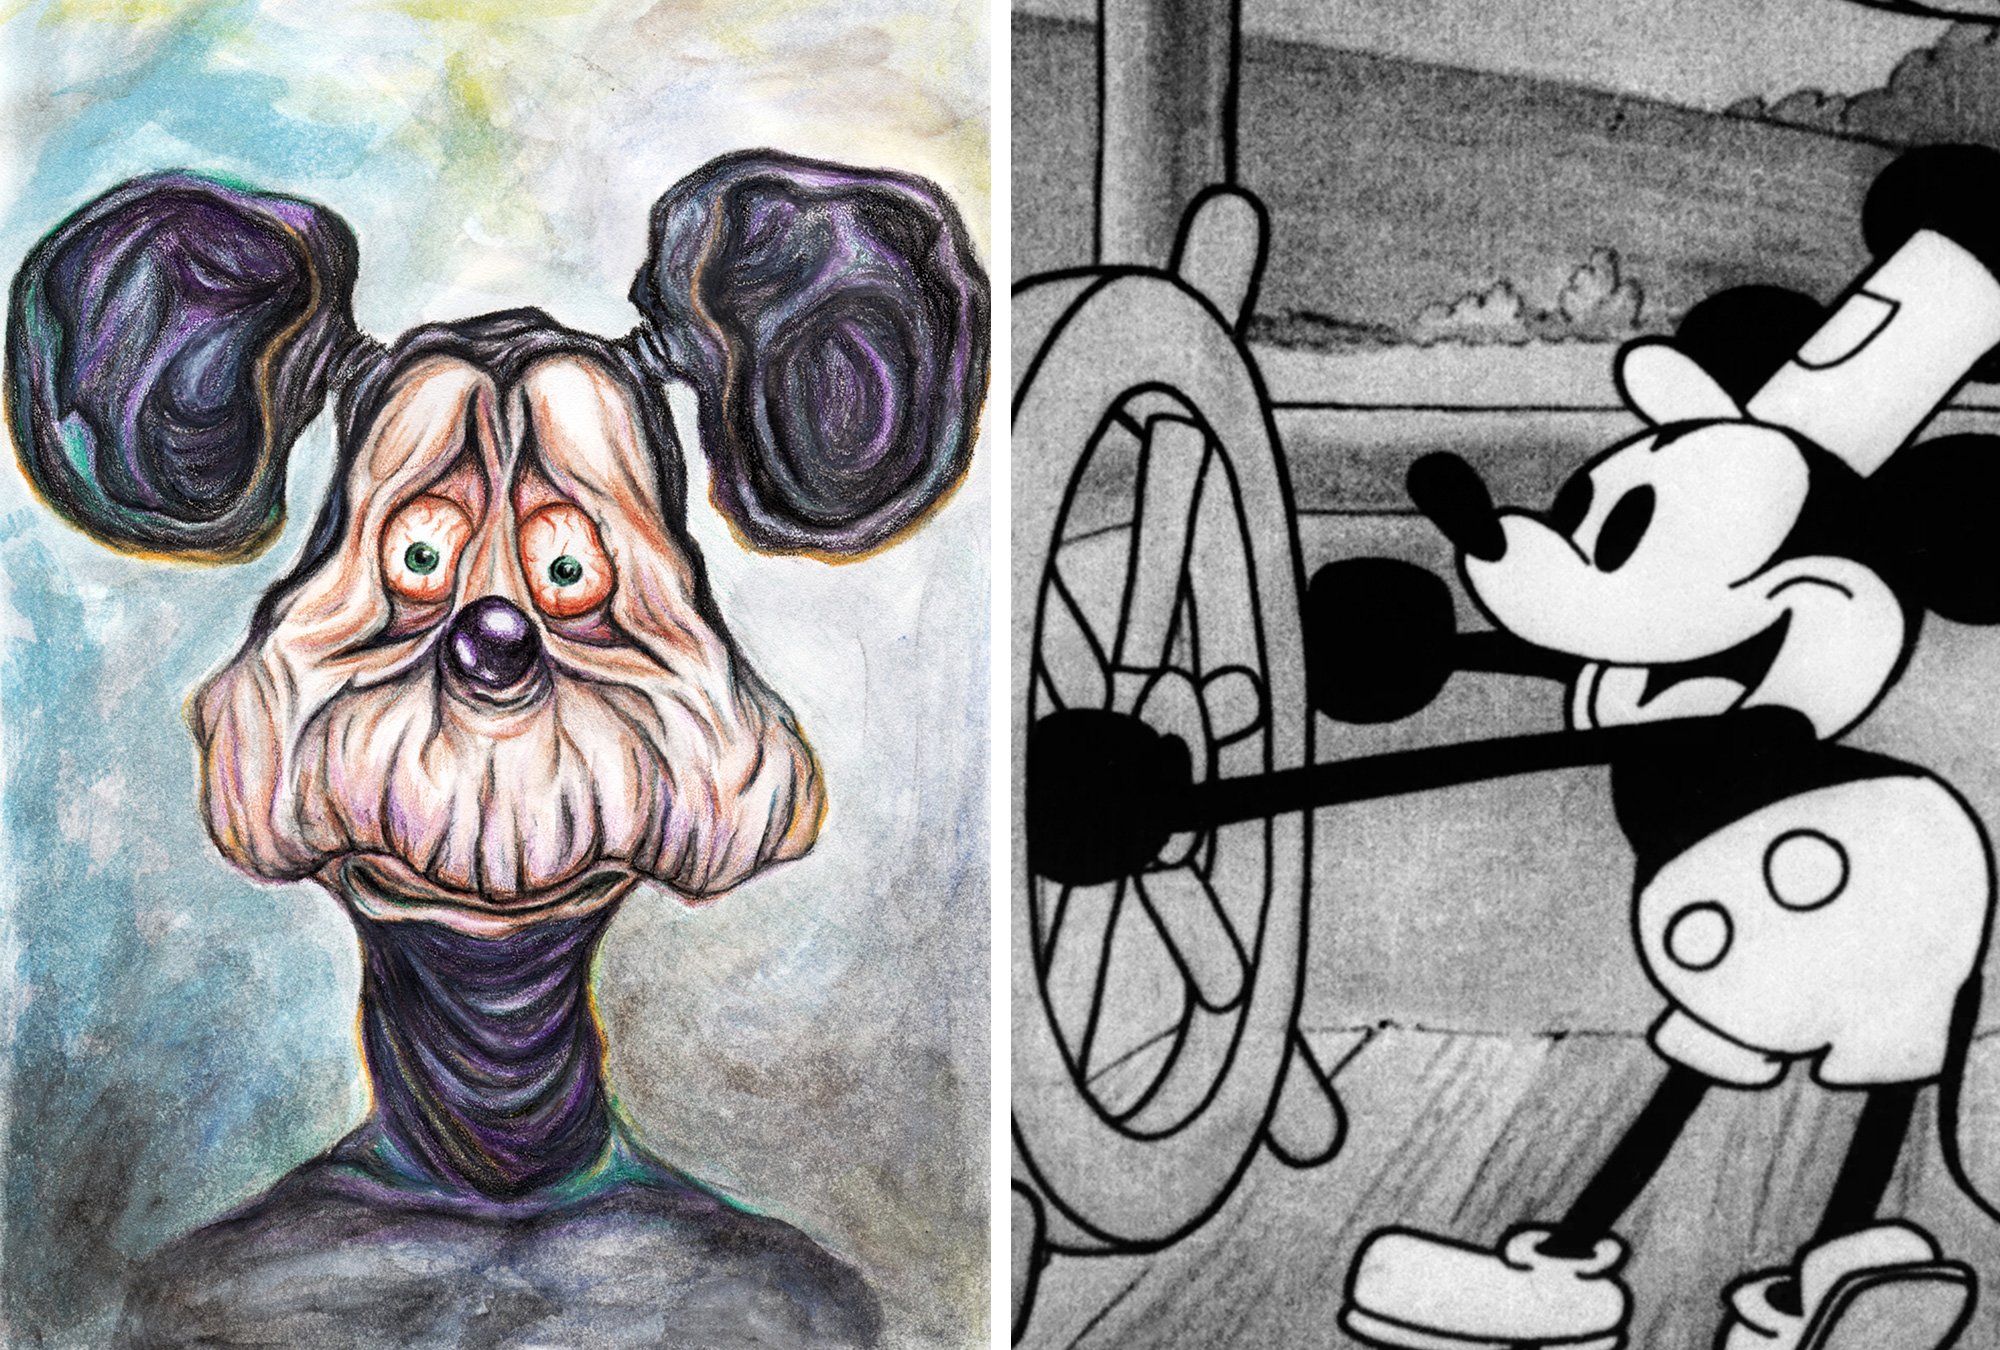 Steamboat Willie y el dominio público: Nuevos horizontes para Mickey Mouse.